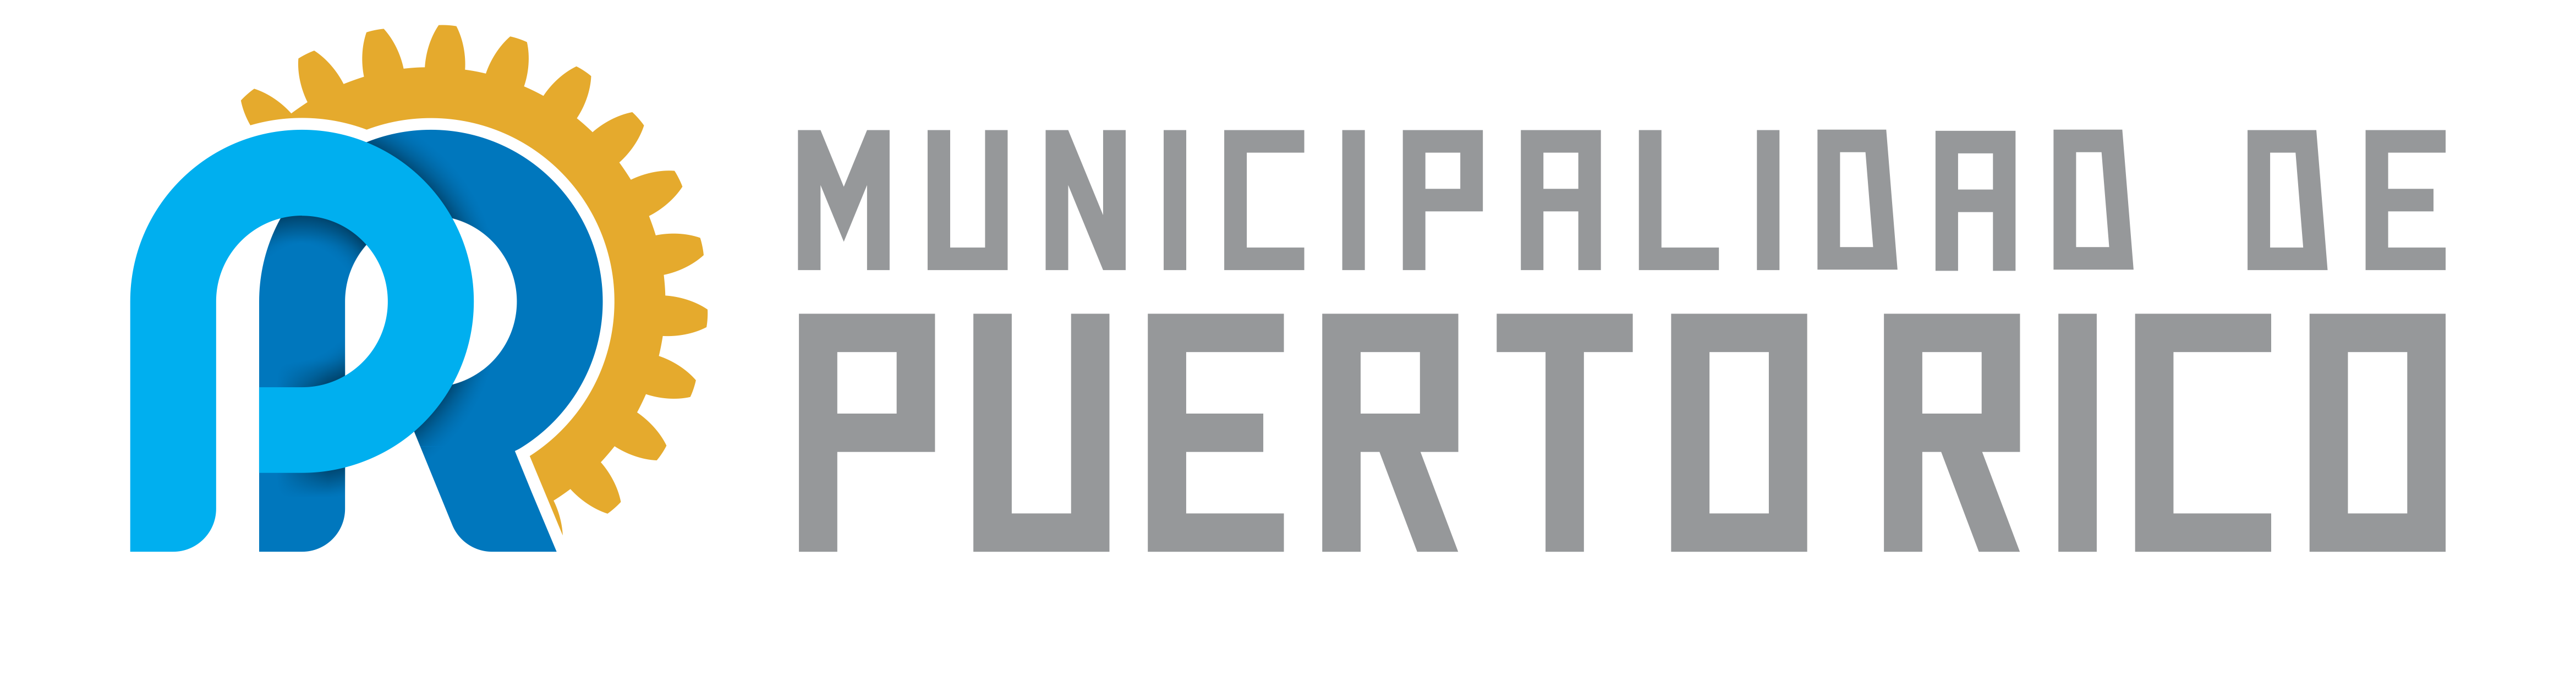 Municipalidad de Puerto Rico